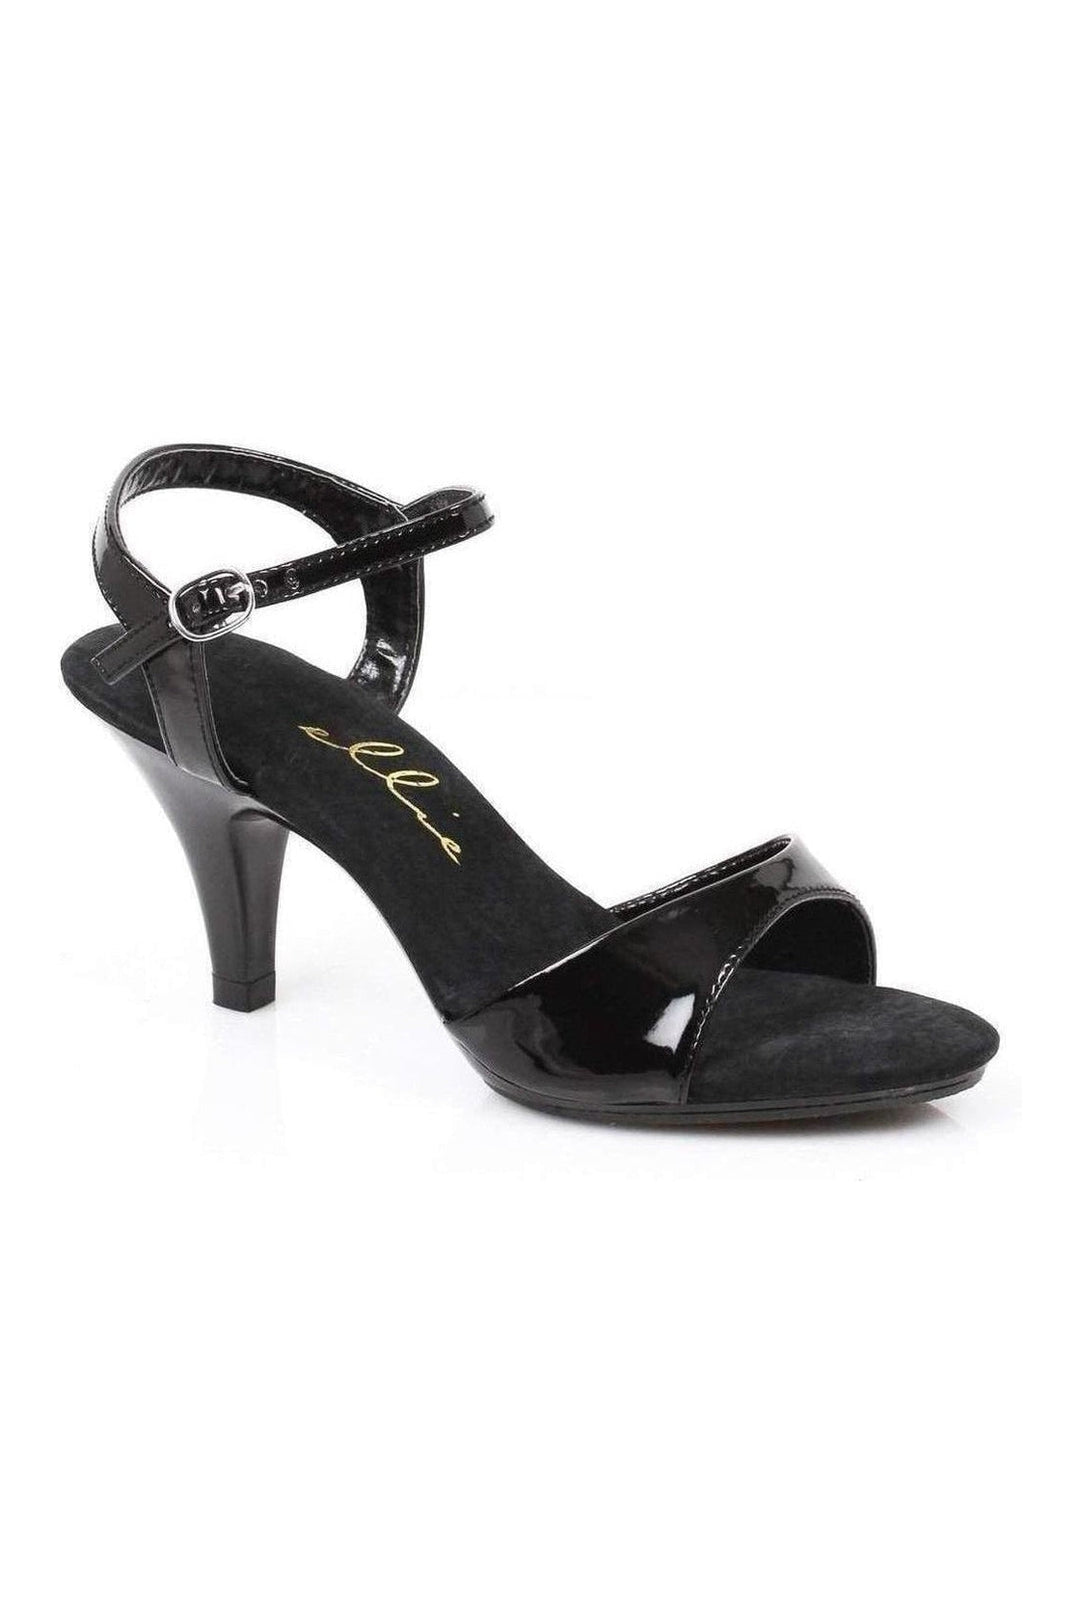 305-JULIET Sandal | Black Patent-Ellie Shoes-Black-Sandals-SEXYSHOES.COM